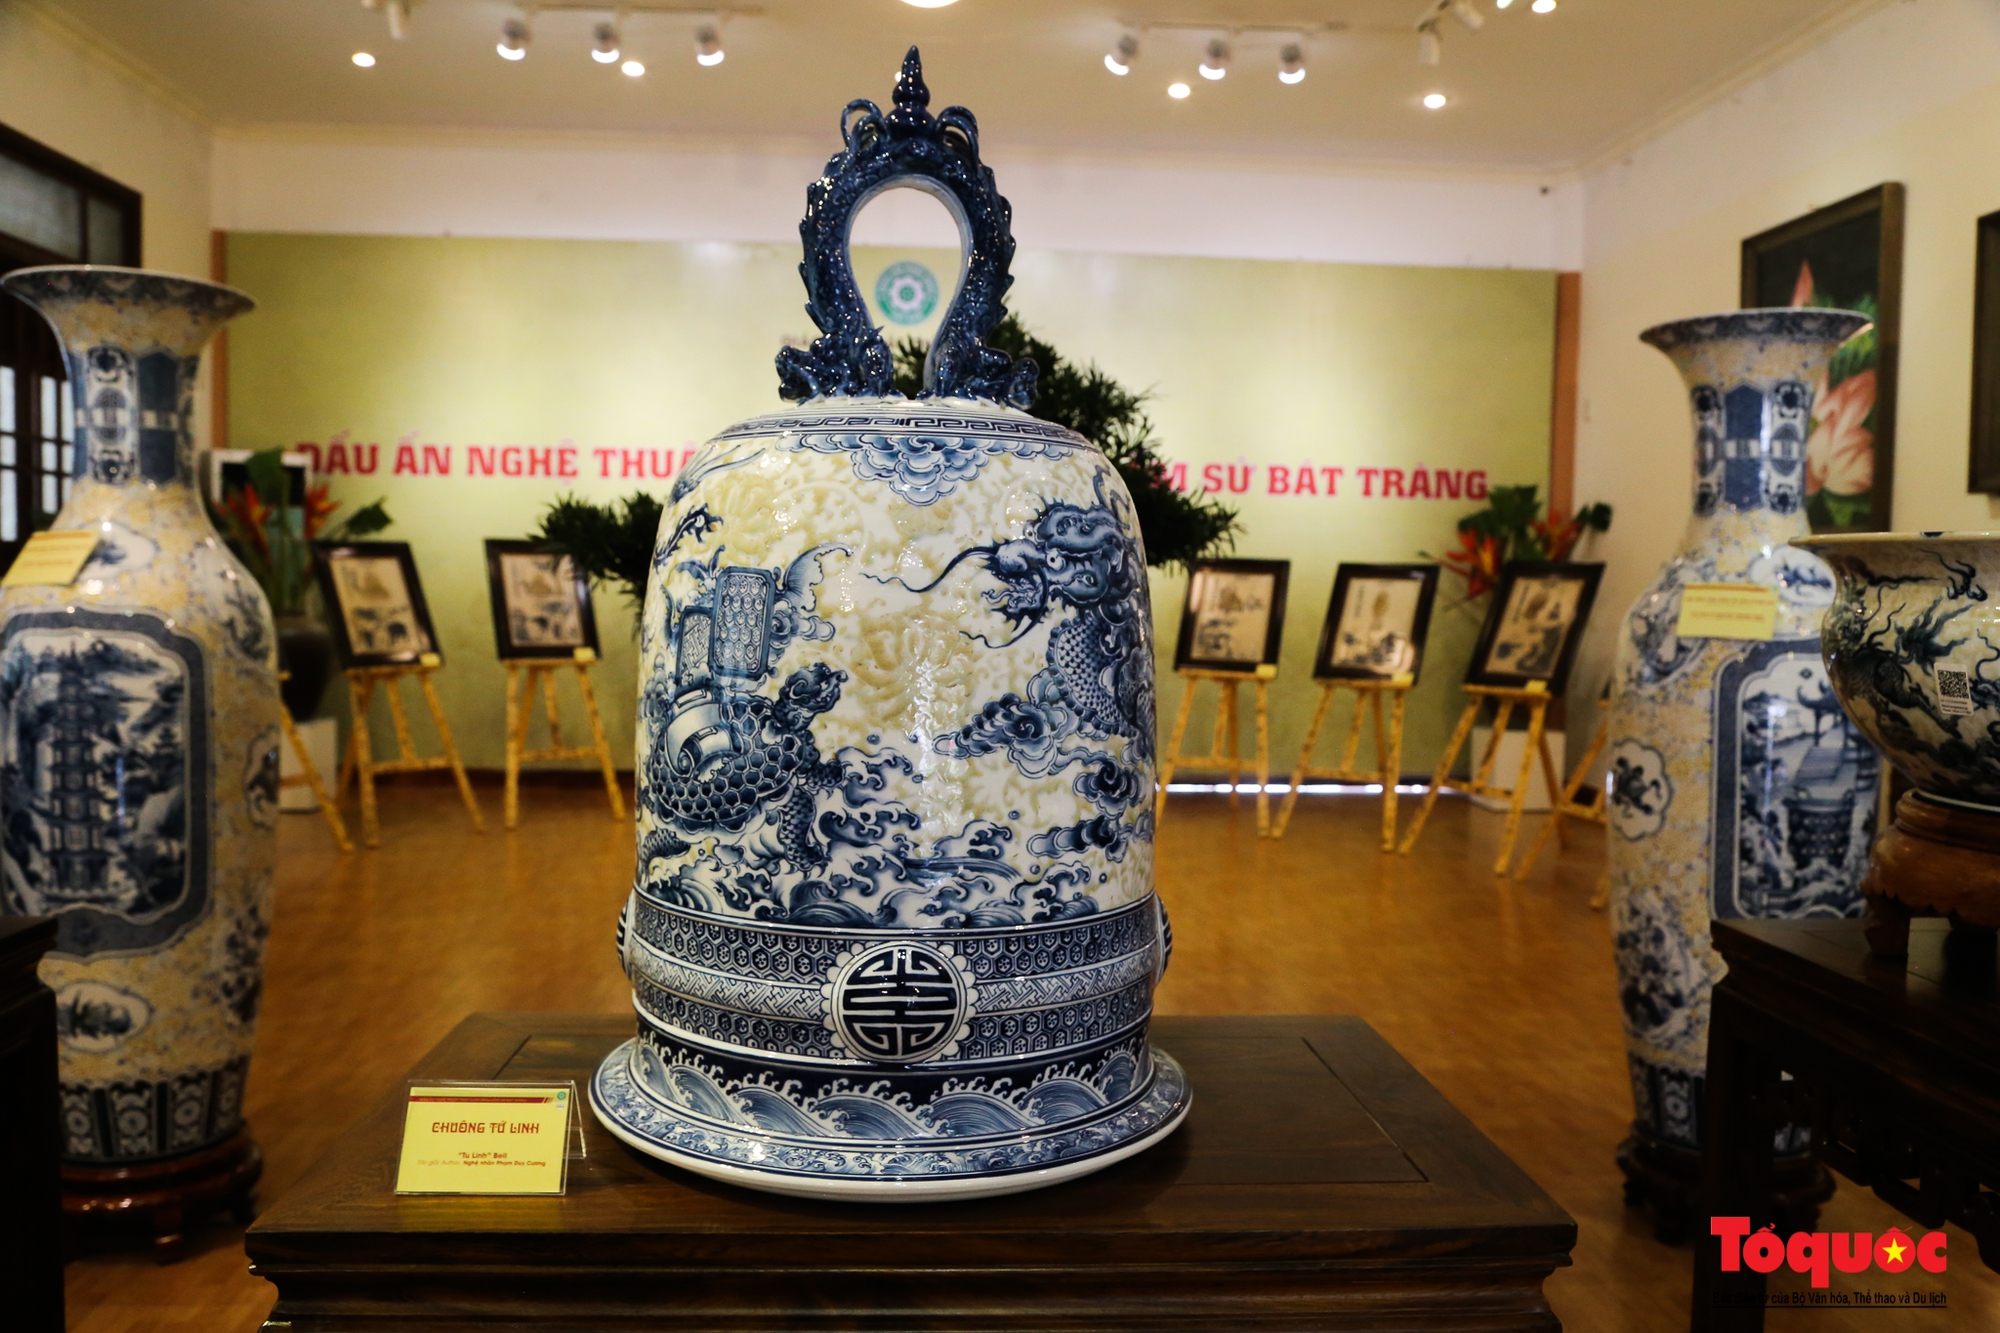 Chiêm ngưỡng dấu ấn nghệ thuật Phật giáo trên gốm sứ Bát Tràng - Ảnh 7.